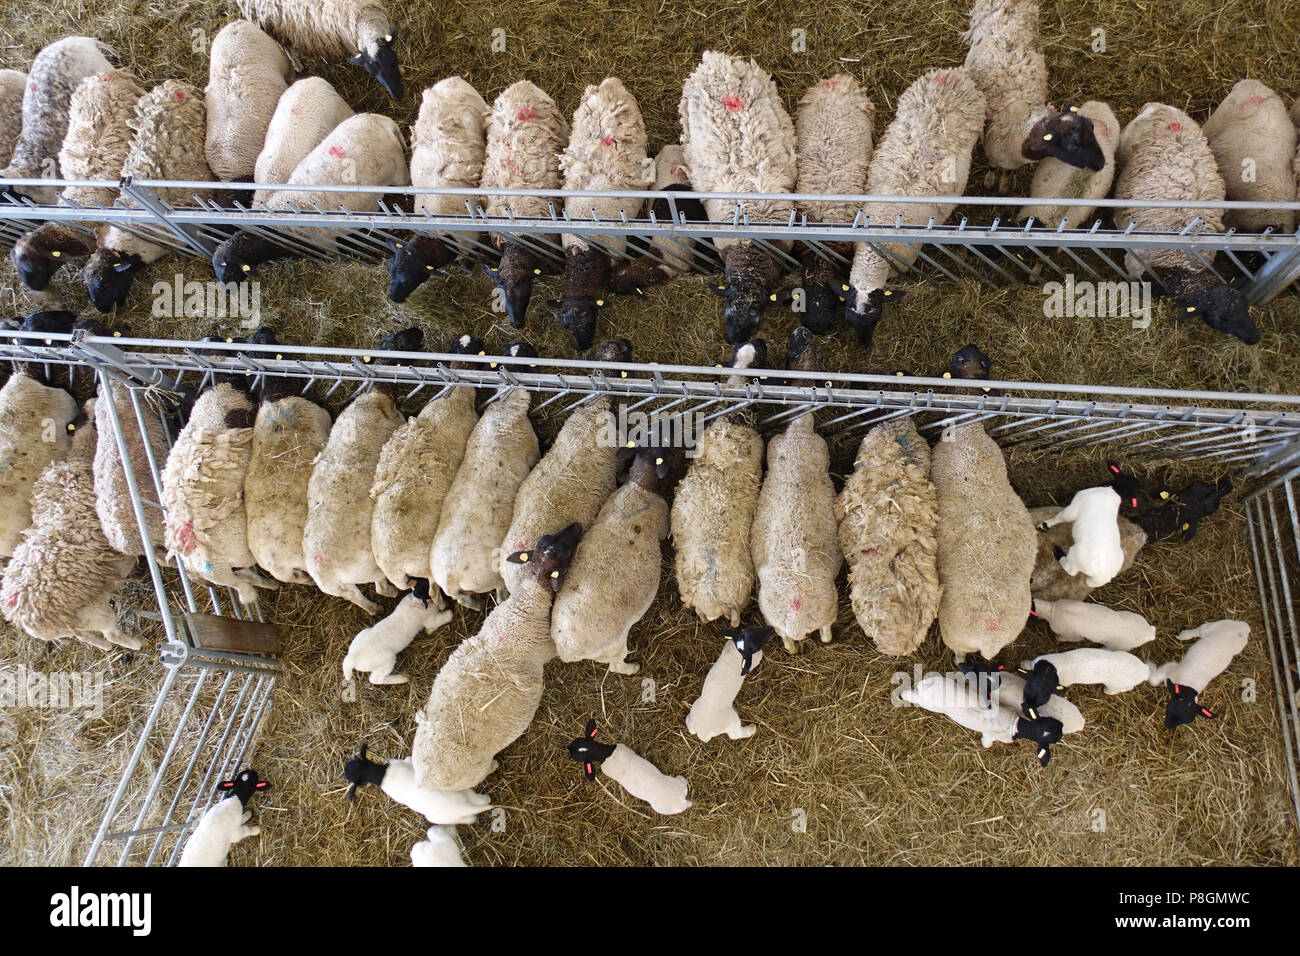 Nuovo Kaetwin, Germania, Dorper pecore nella stalla mangiare del fieno Foto Stock